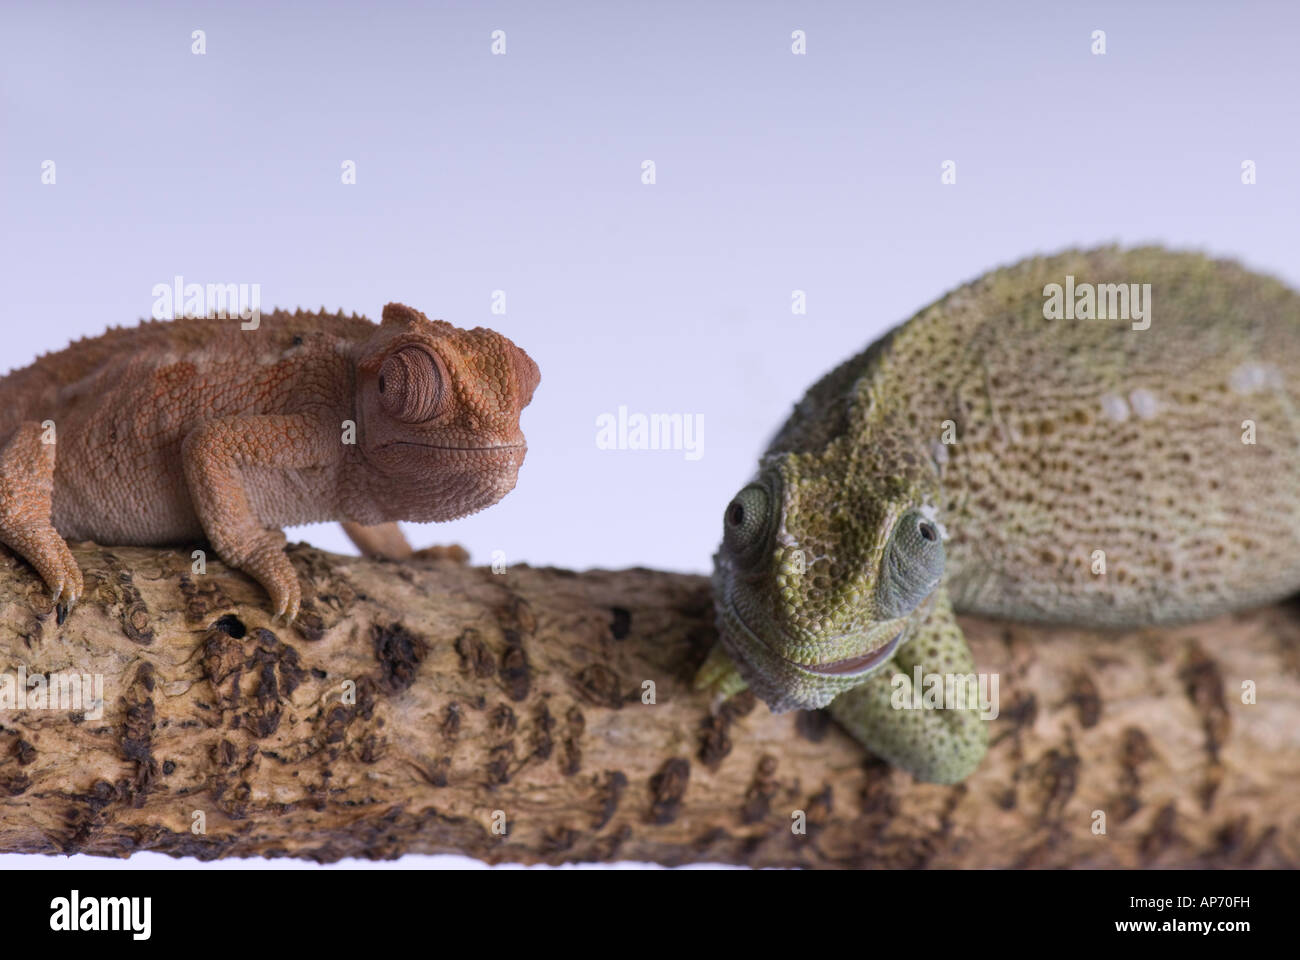 2 Chameleons on branch Stock Photo